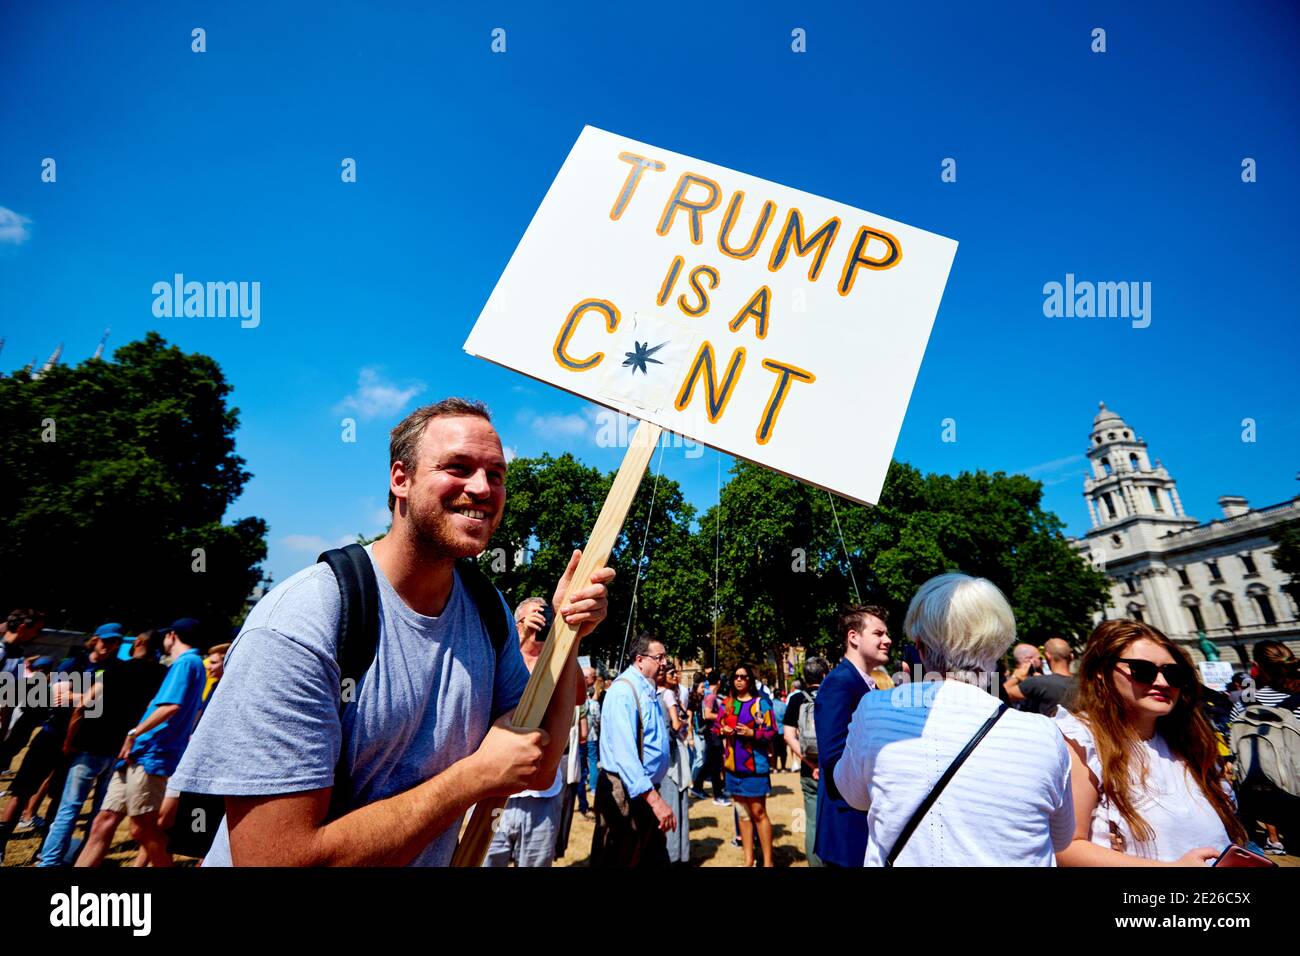 El hombre que tiene un signo que dice Trump es un C*nt in Plaza del Parlamento durante una visita oficial del Presidente de los Estados Unidos A Londres Foto de stock